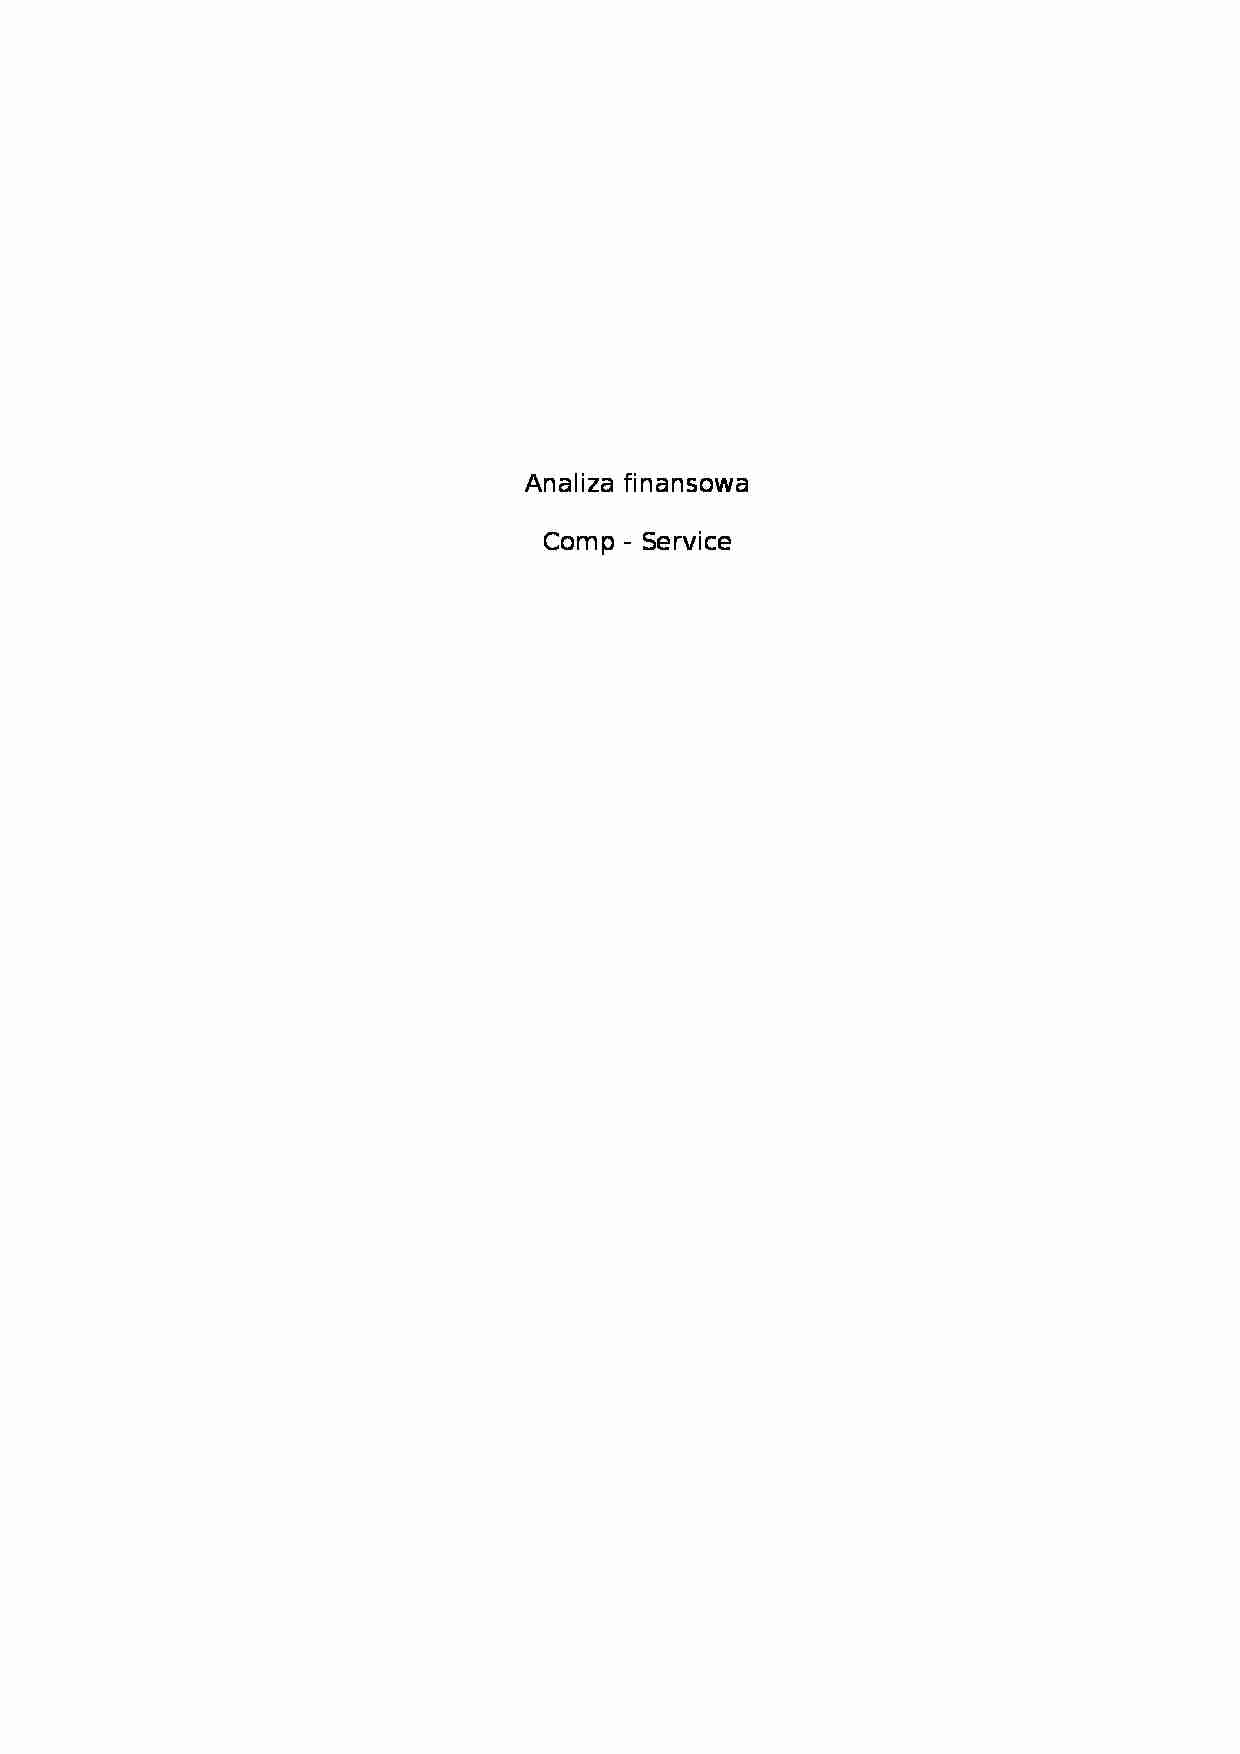 Analiza finansowa - firma branży komputerowej - strona 1